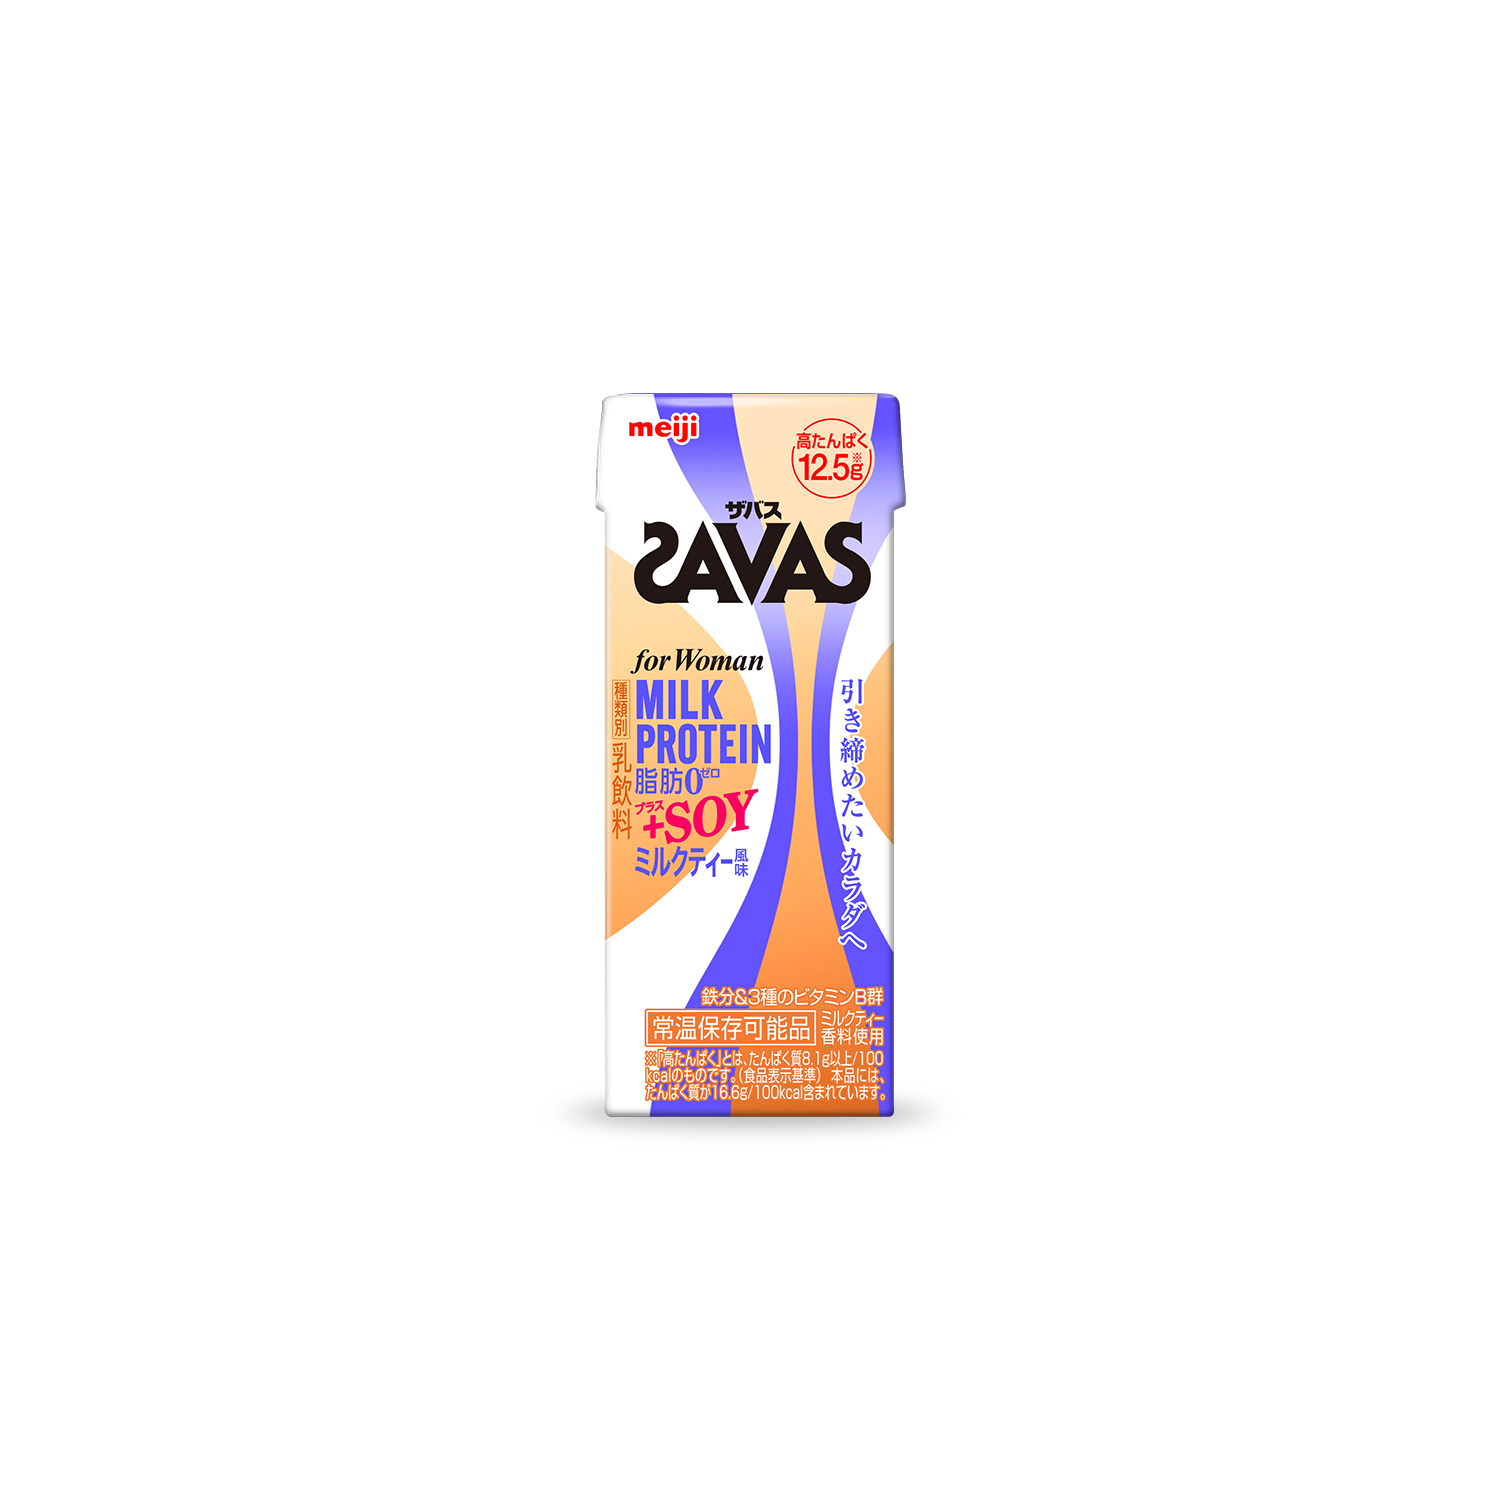 SAVAS FOR WOMANのパッケージデザイン